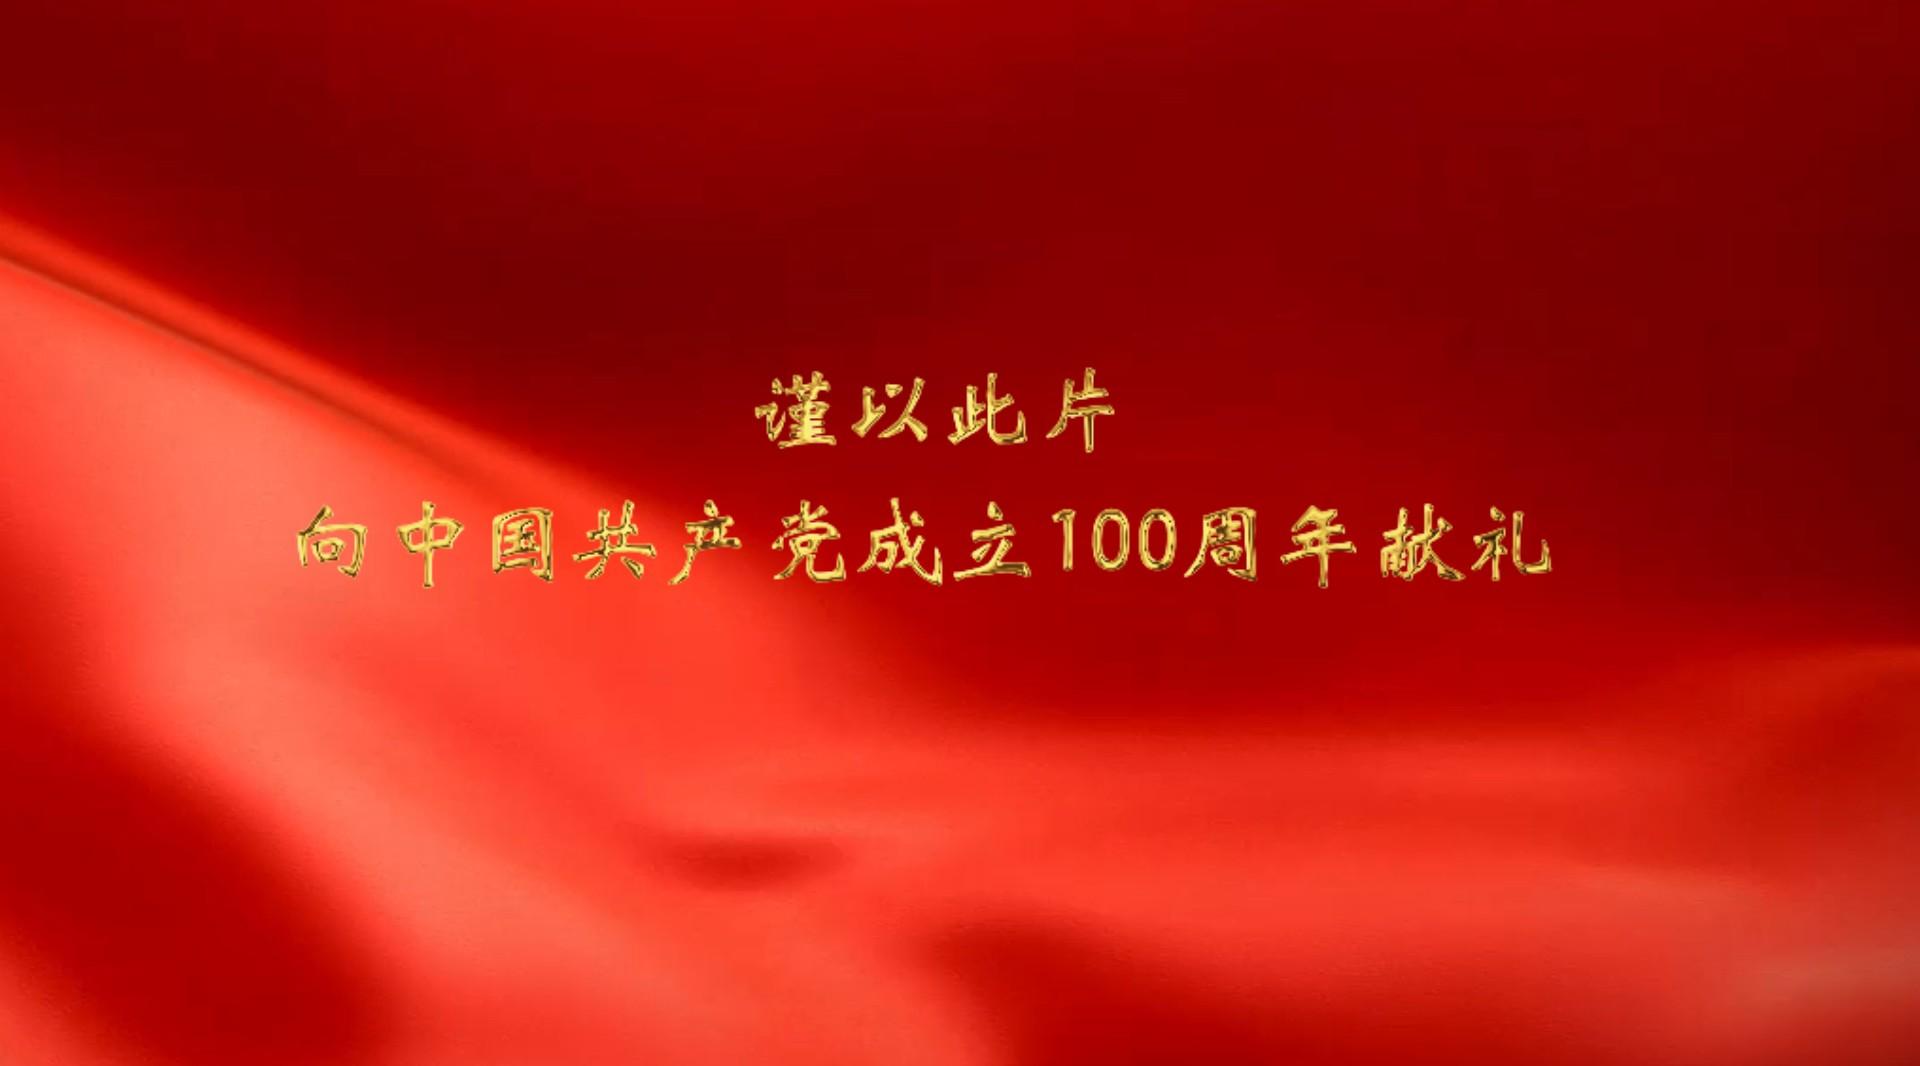 国家统计局太谷调查队向党100周年献礼